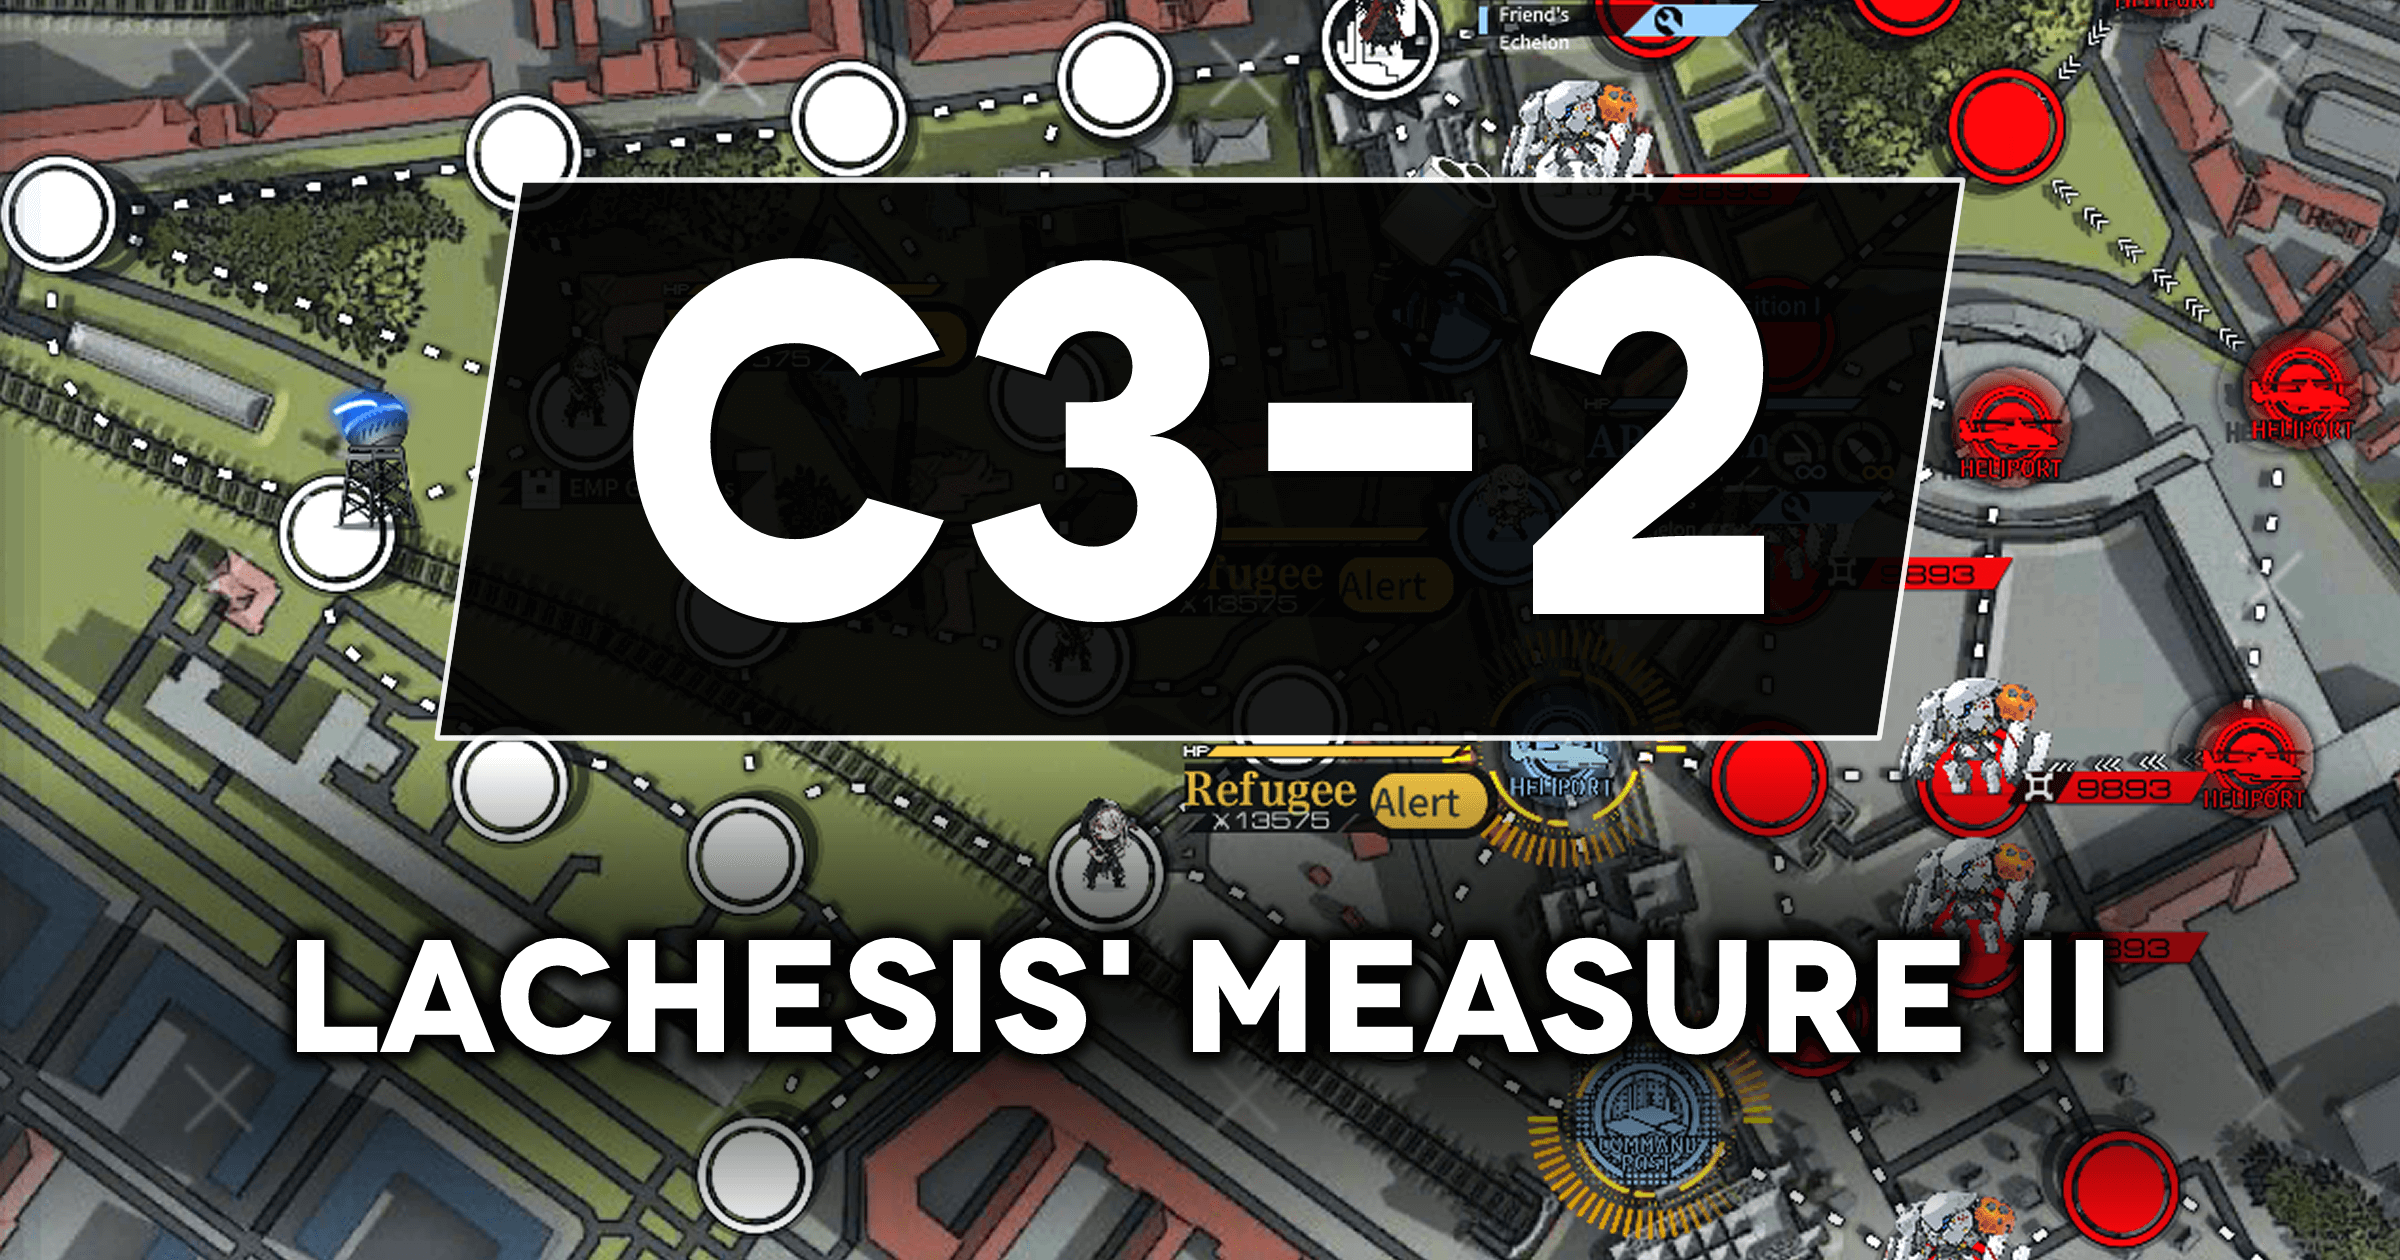 c3-2 MS